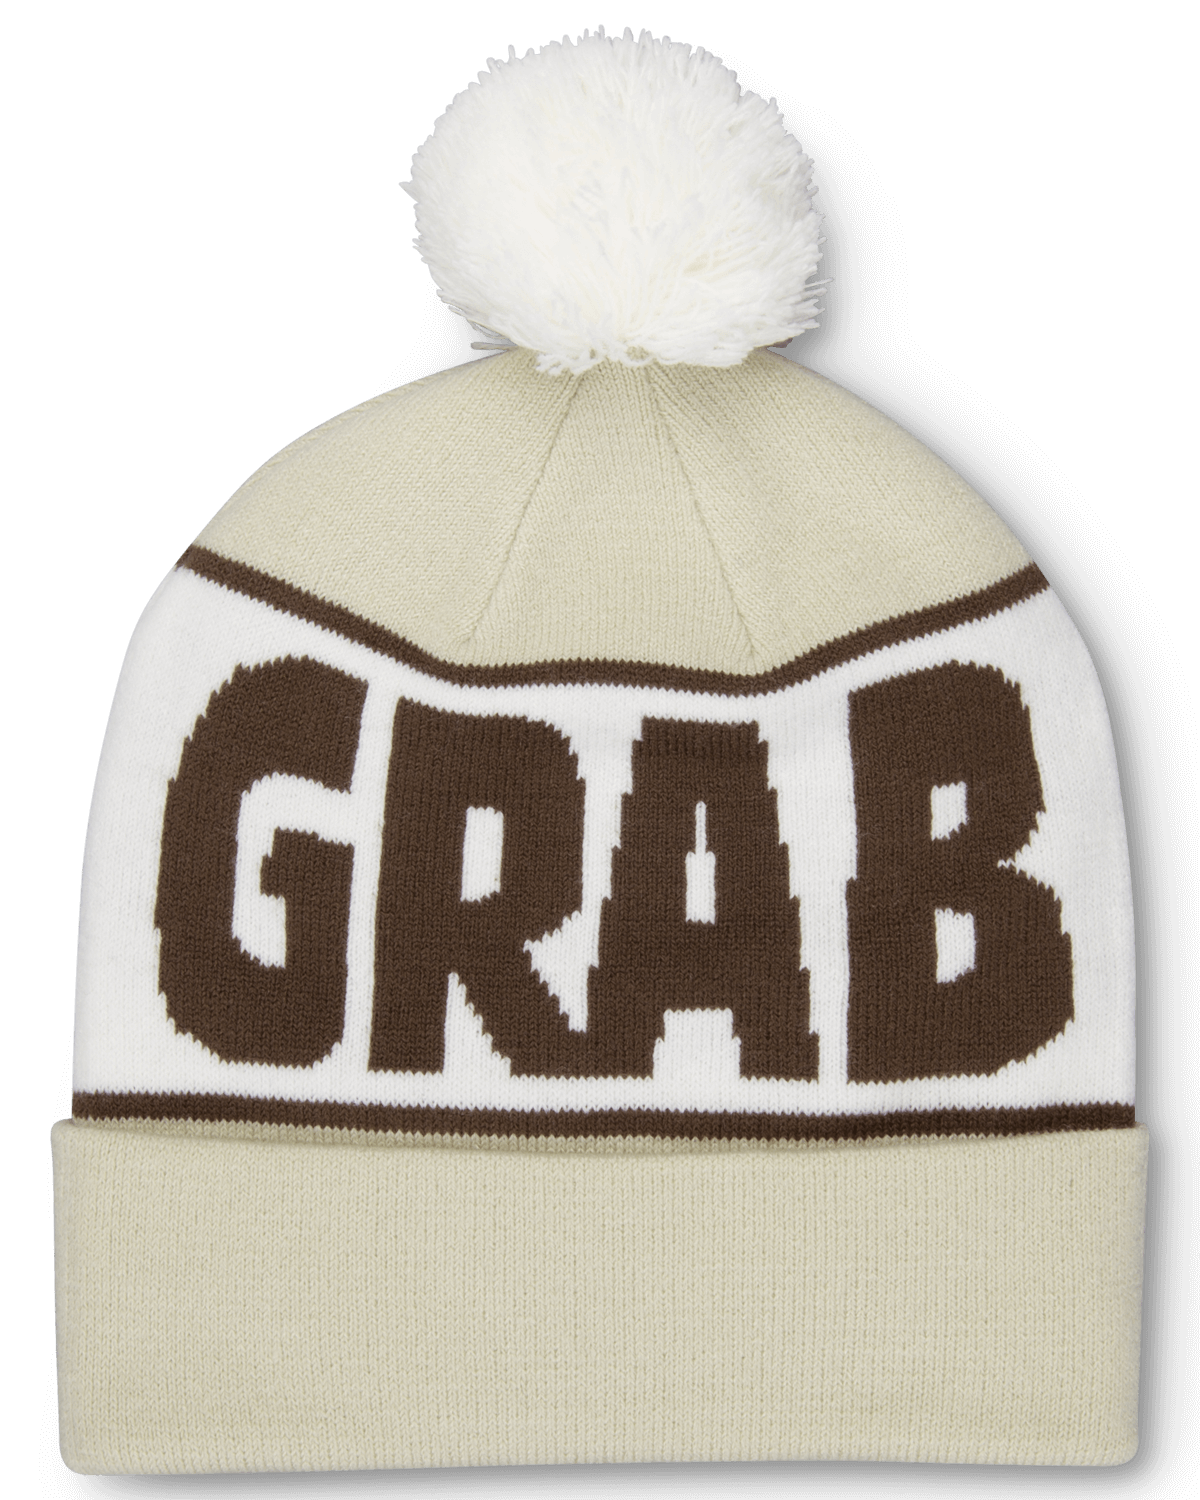 Grab & Go Hats! – The Lamb & Kid